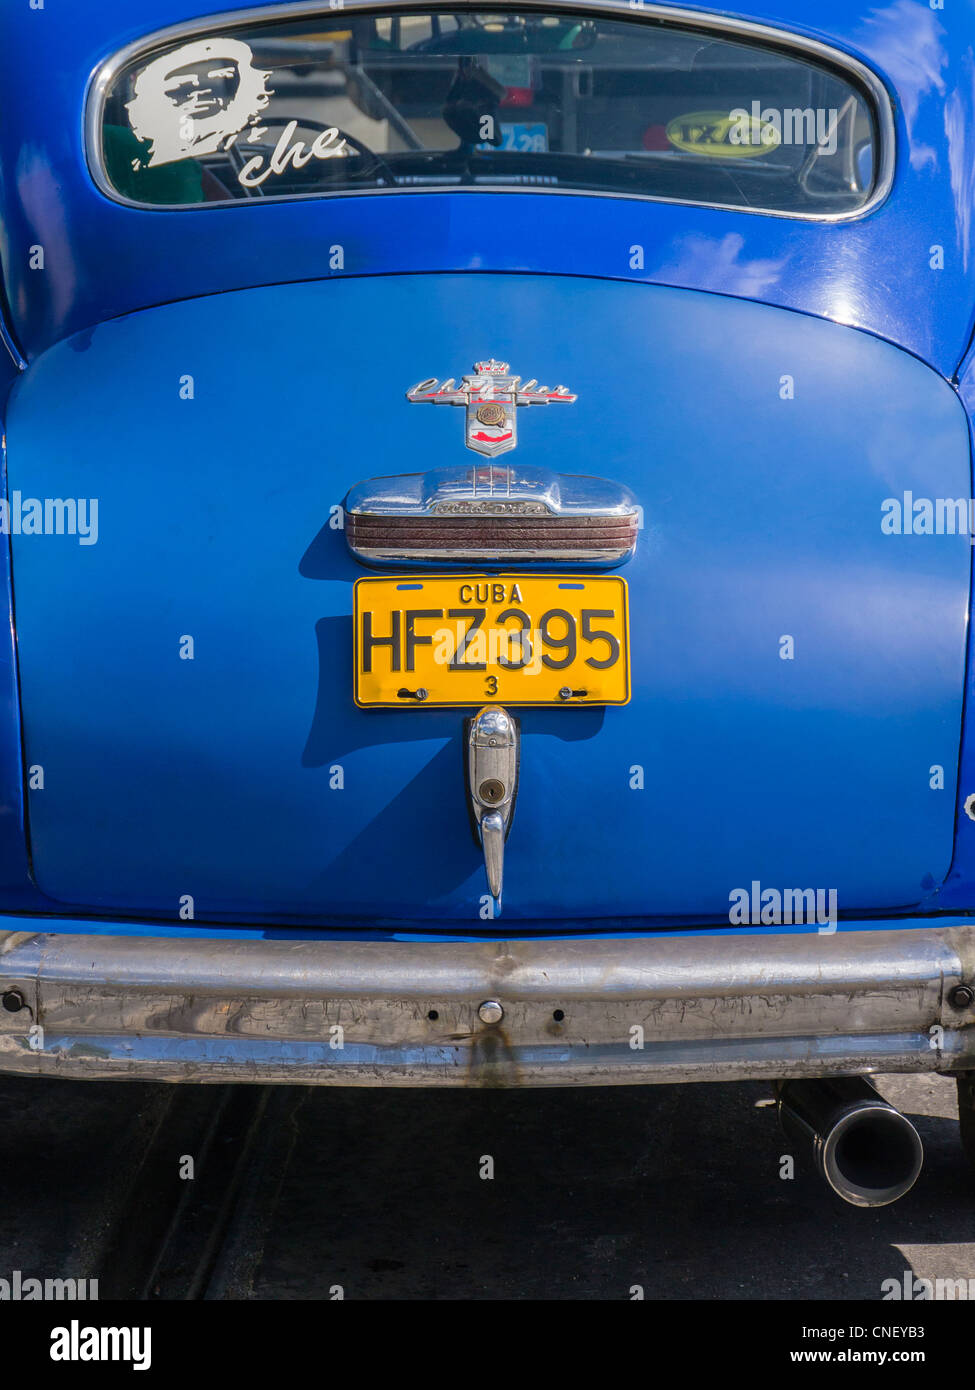 L'extrémité arrière d'une vieille voiture américaine Chrysler bleu utilisé quotidiennement par son propriétaire cubaine à La Havane, Cuba. Banque D'Images